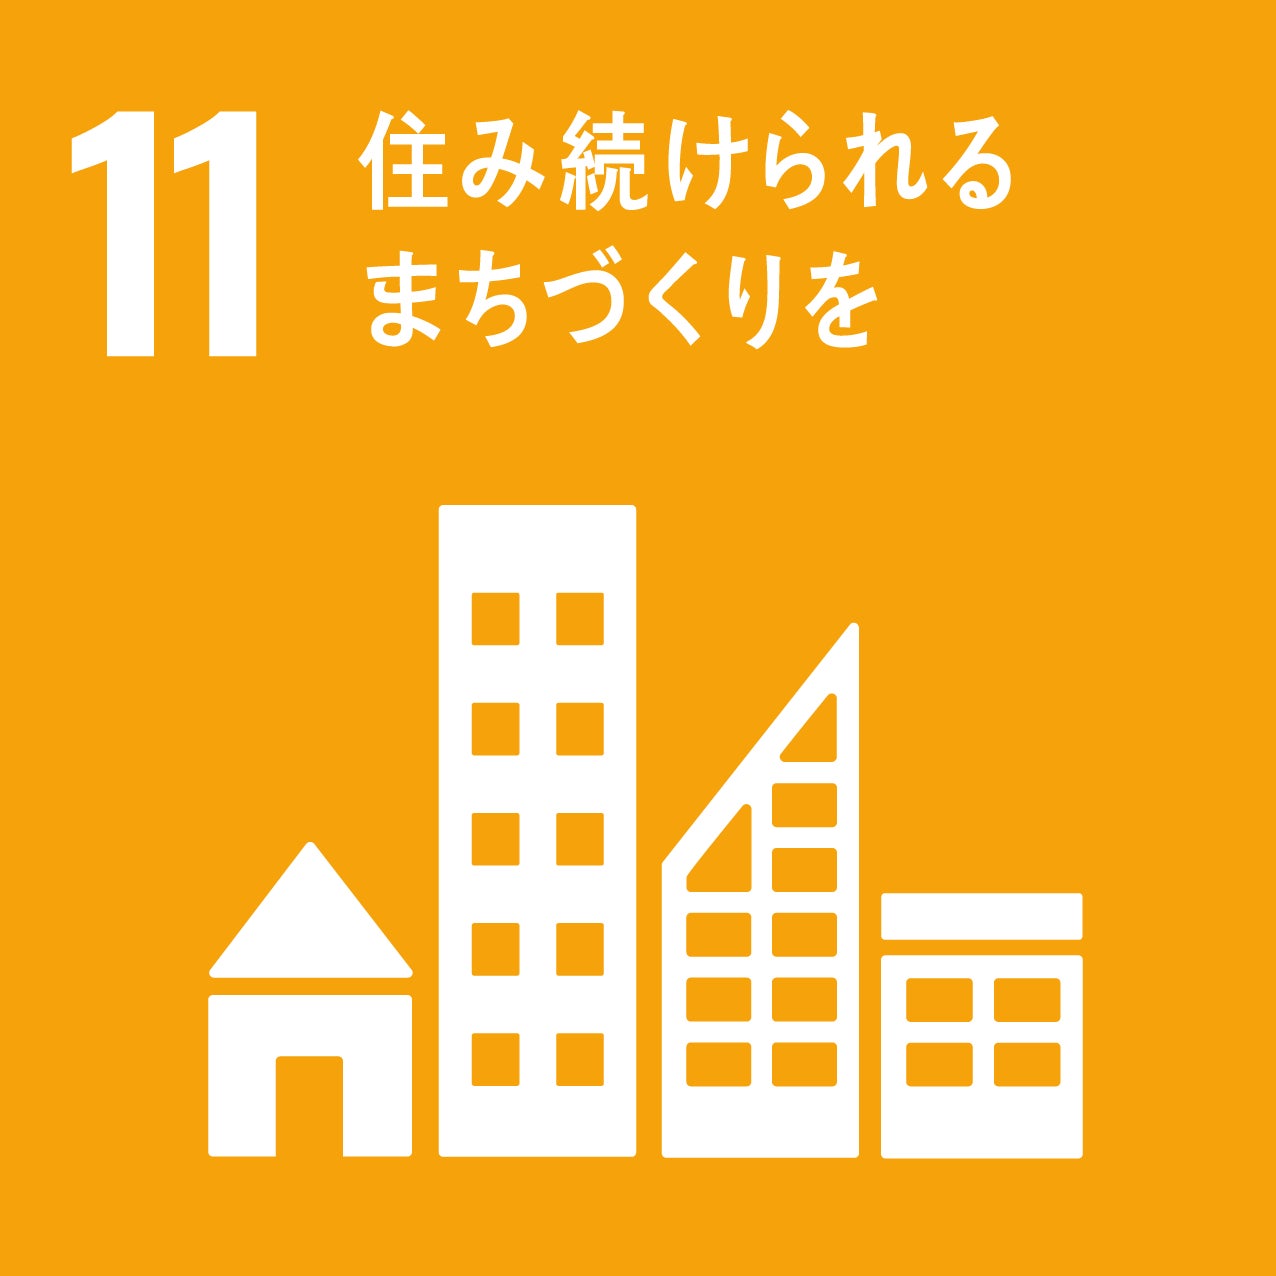 広域渋谷圏で『職・住・遊 近接の新しいライフスタイル』を提案する新複合施設「Forestgate Daikanyama(フォレストゲート代官山)」のサブ画像9